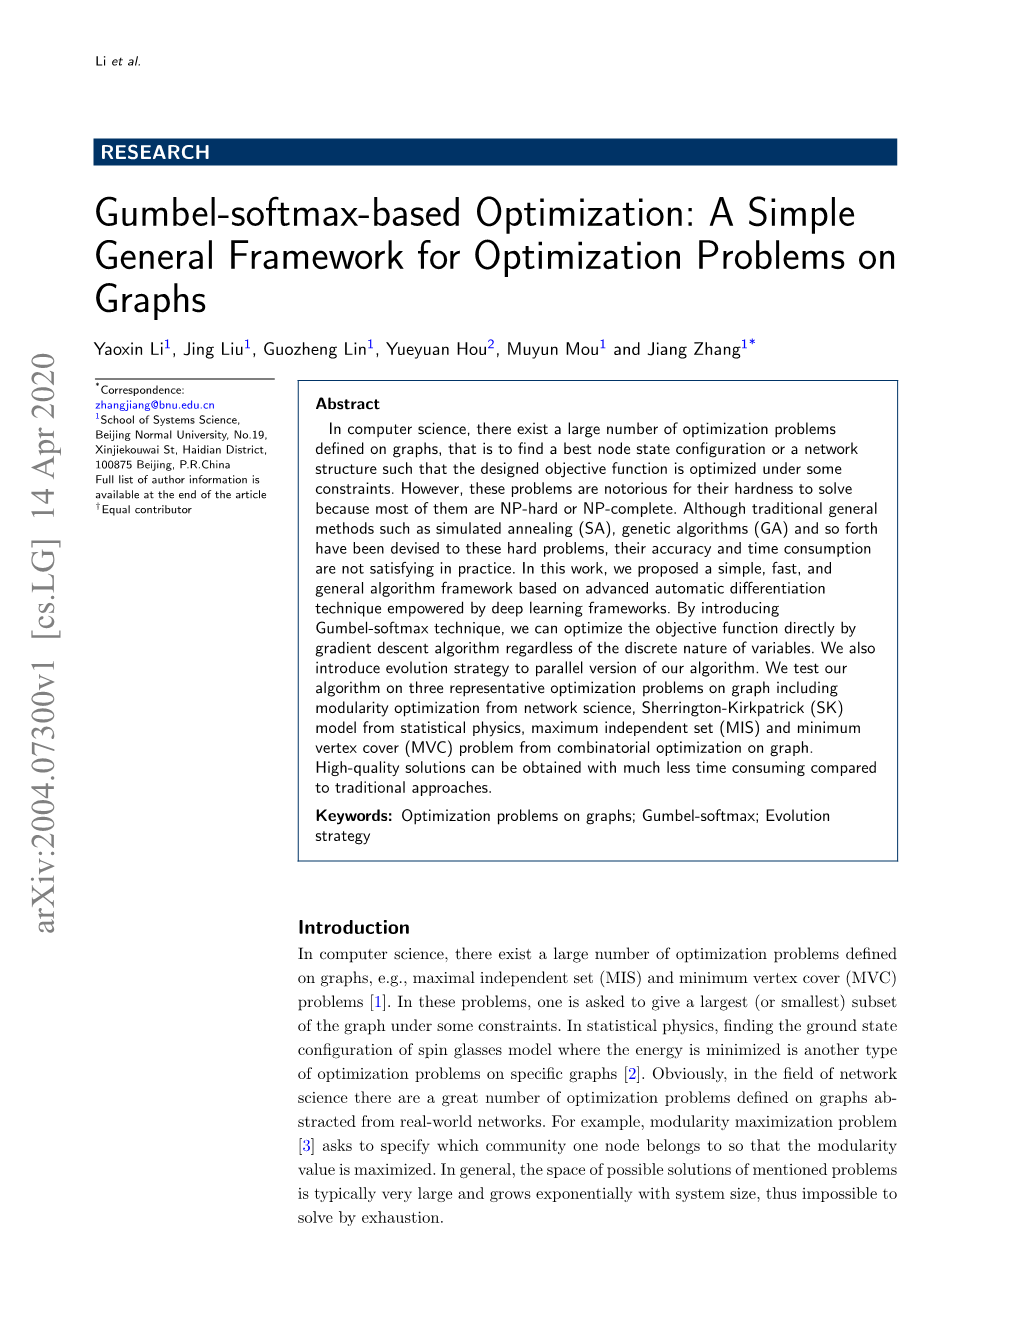 Gumbel-Softmax-Based Optimization: a Simple General Framework for Optimization Problems on Graphs